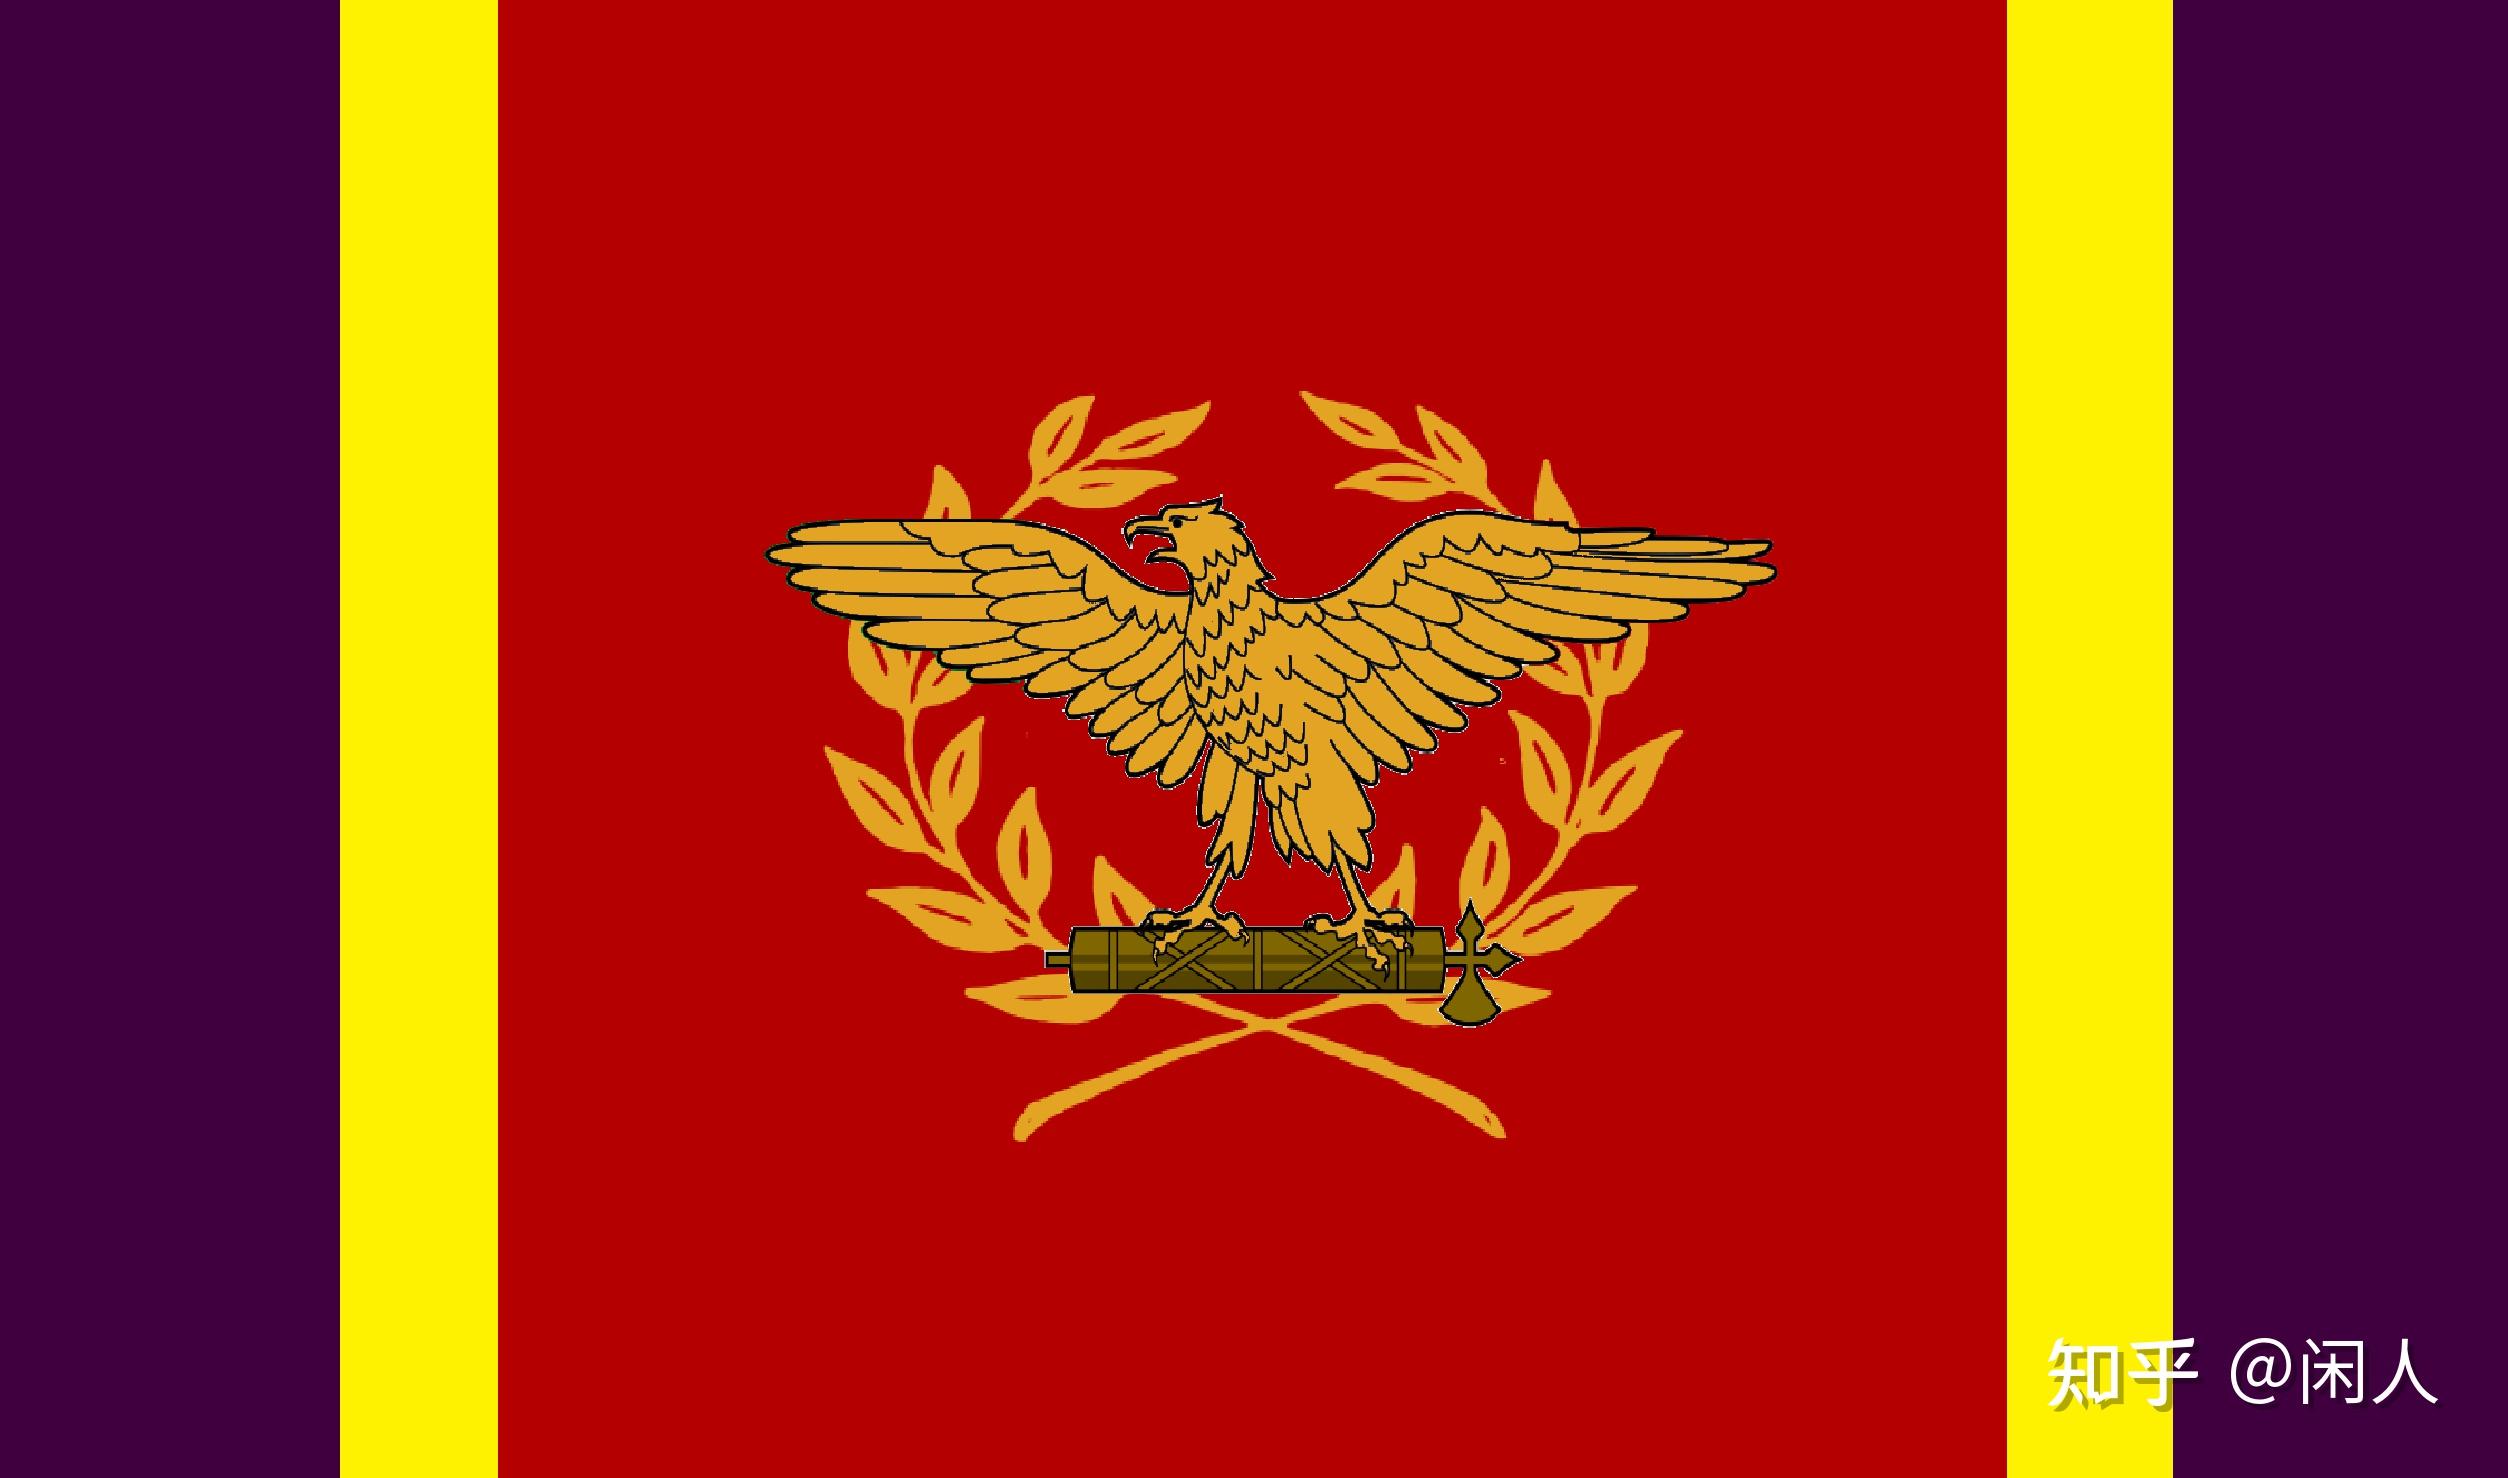 女神幻想之无限之国世界观里的罗马共和国国旗正式称呼:元老院与罗马